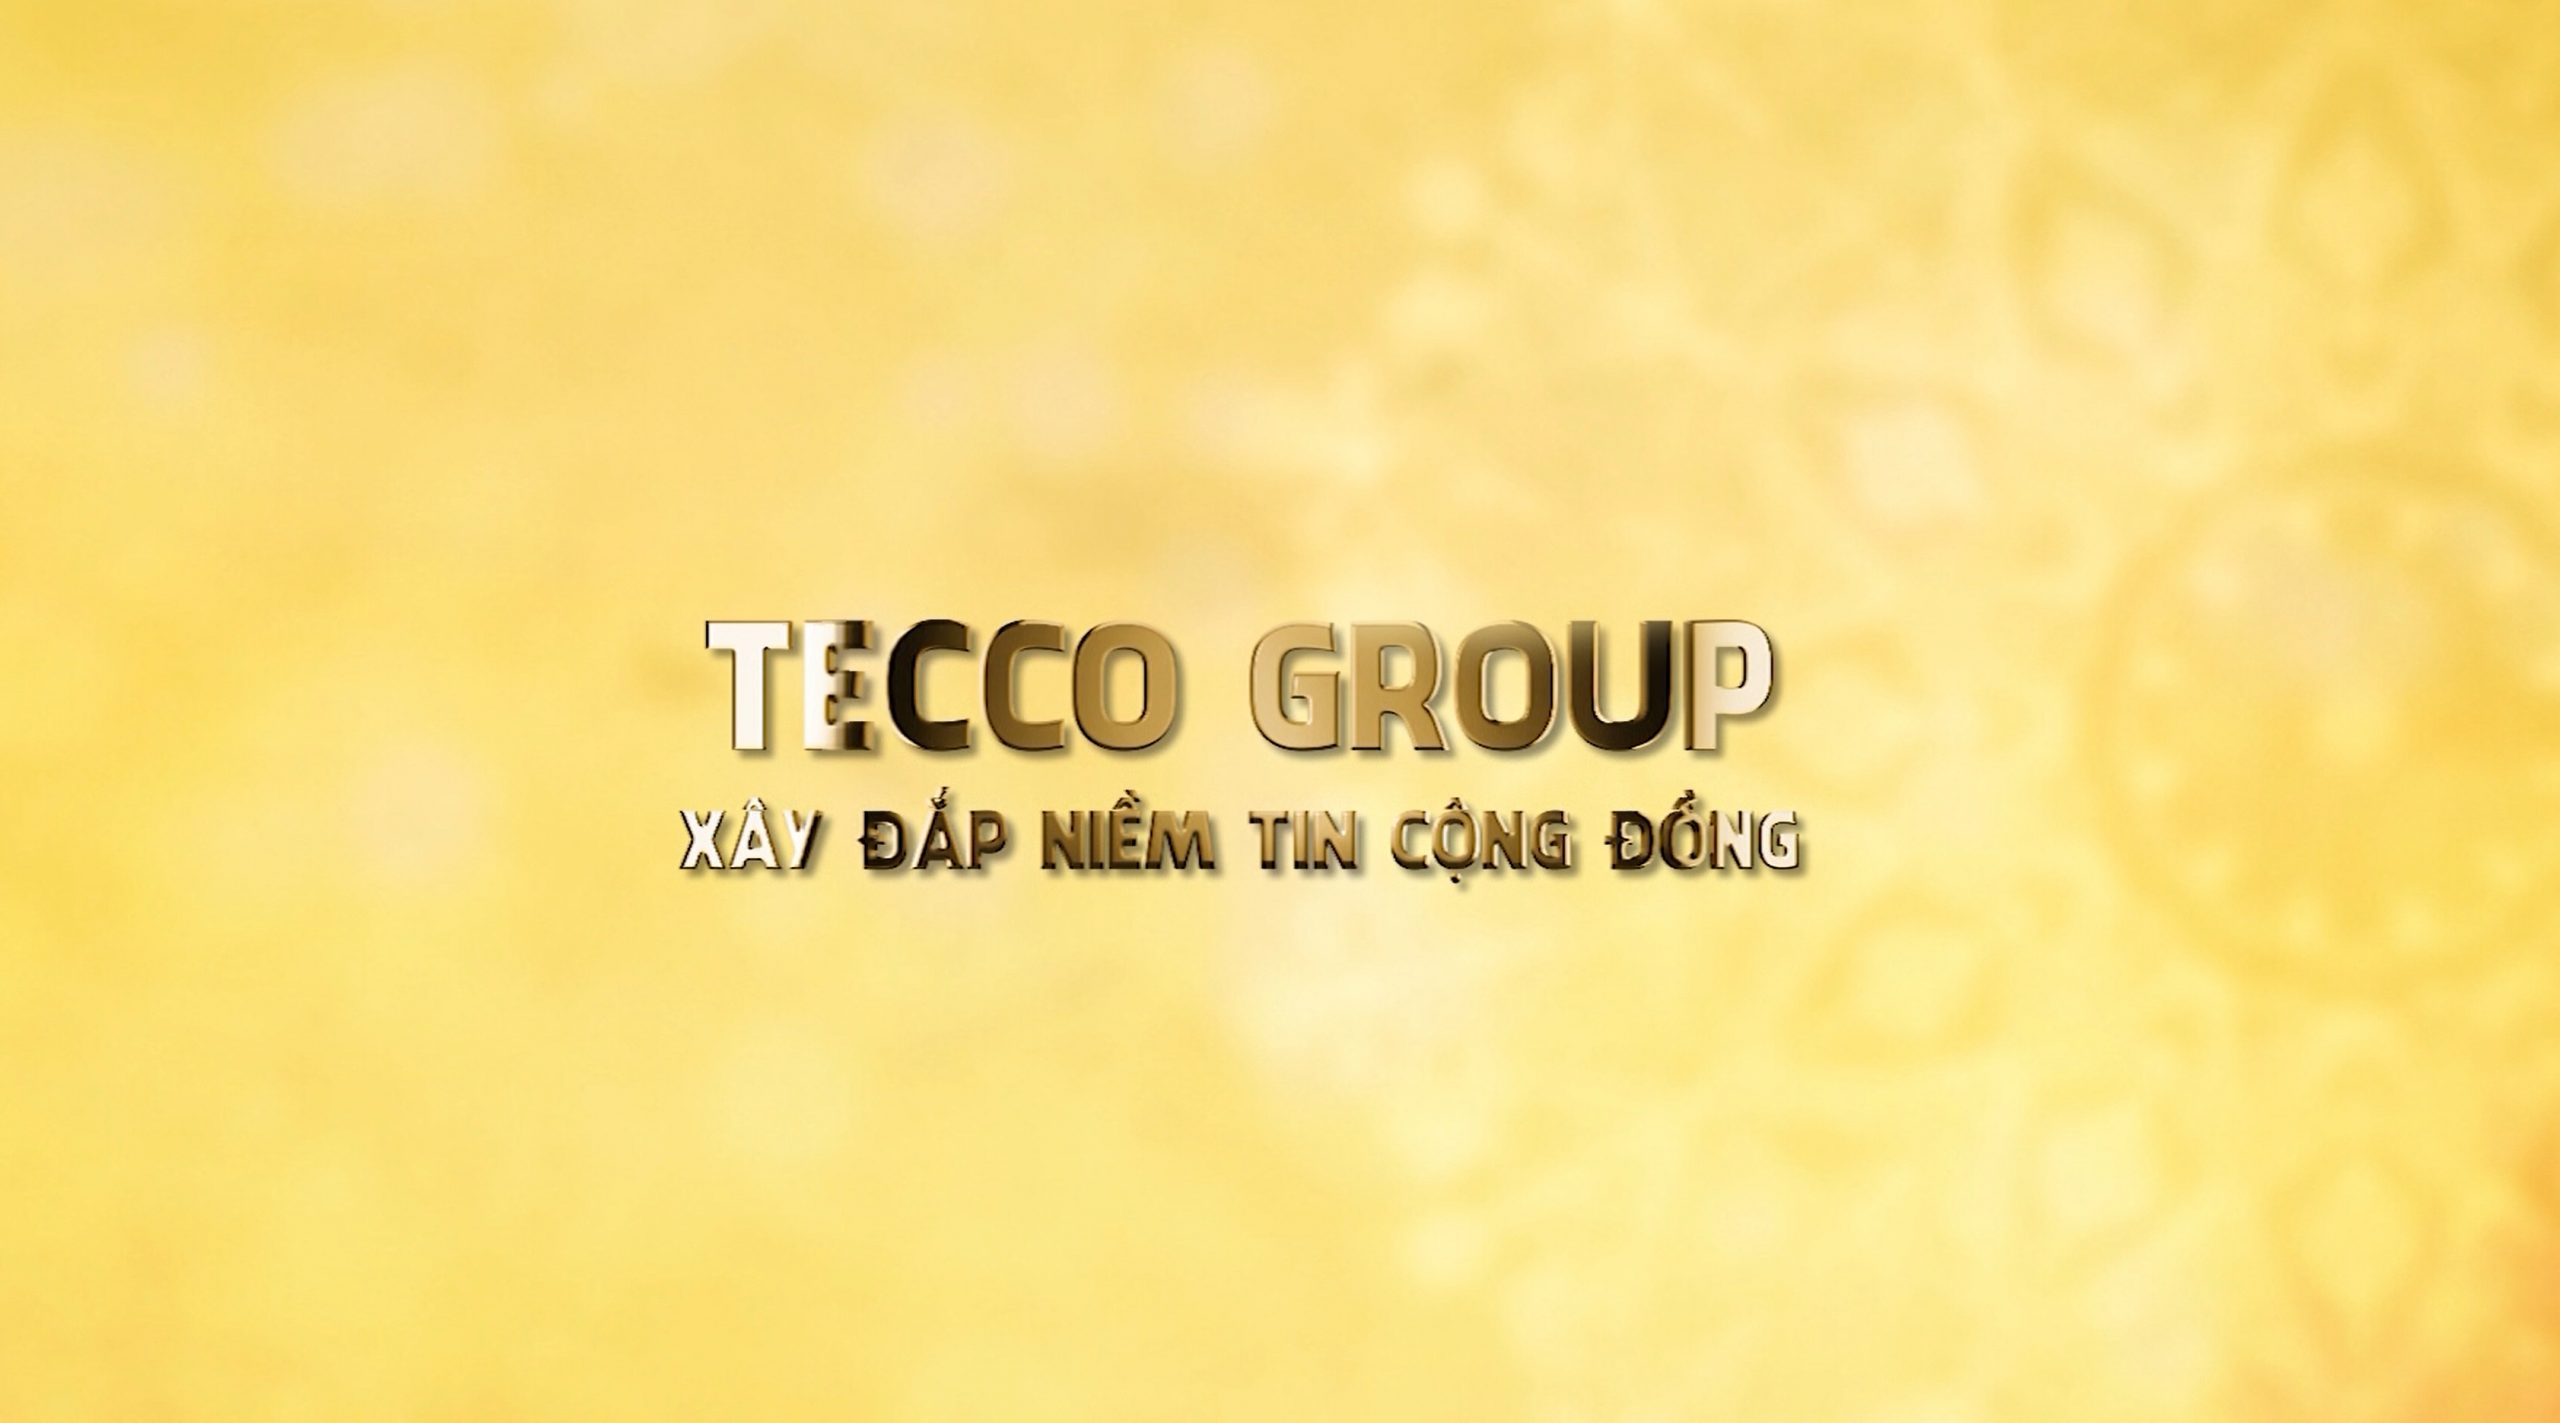 Tecco là tập đoàn có vốn điều lệ 2.000 tỷ đồng